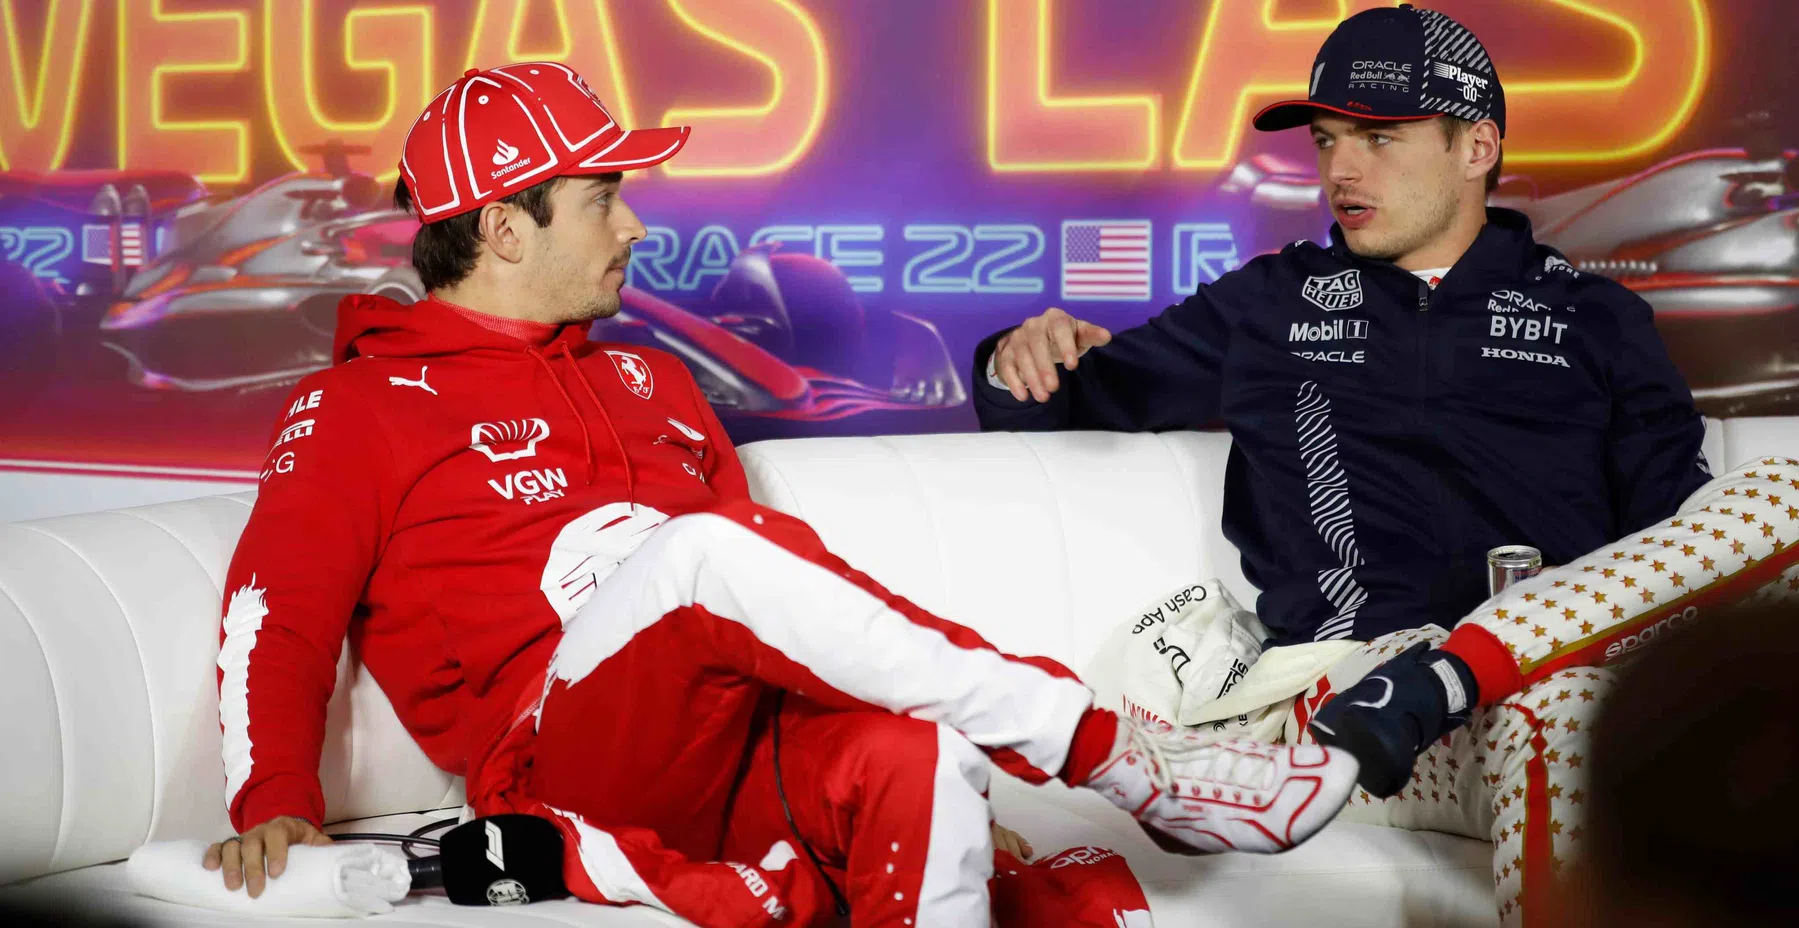 Verstappen und diese F1-Fahrer bei der Pressekonferenz zum GP Abu Dhabi